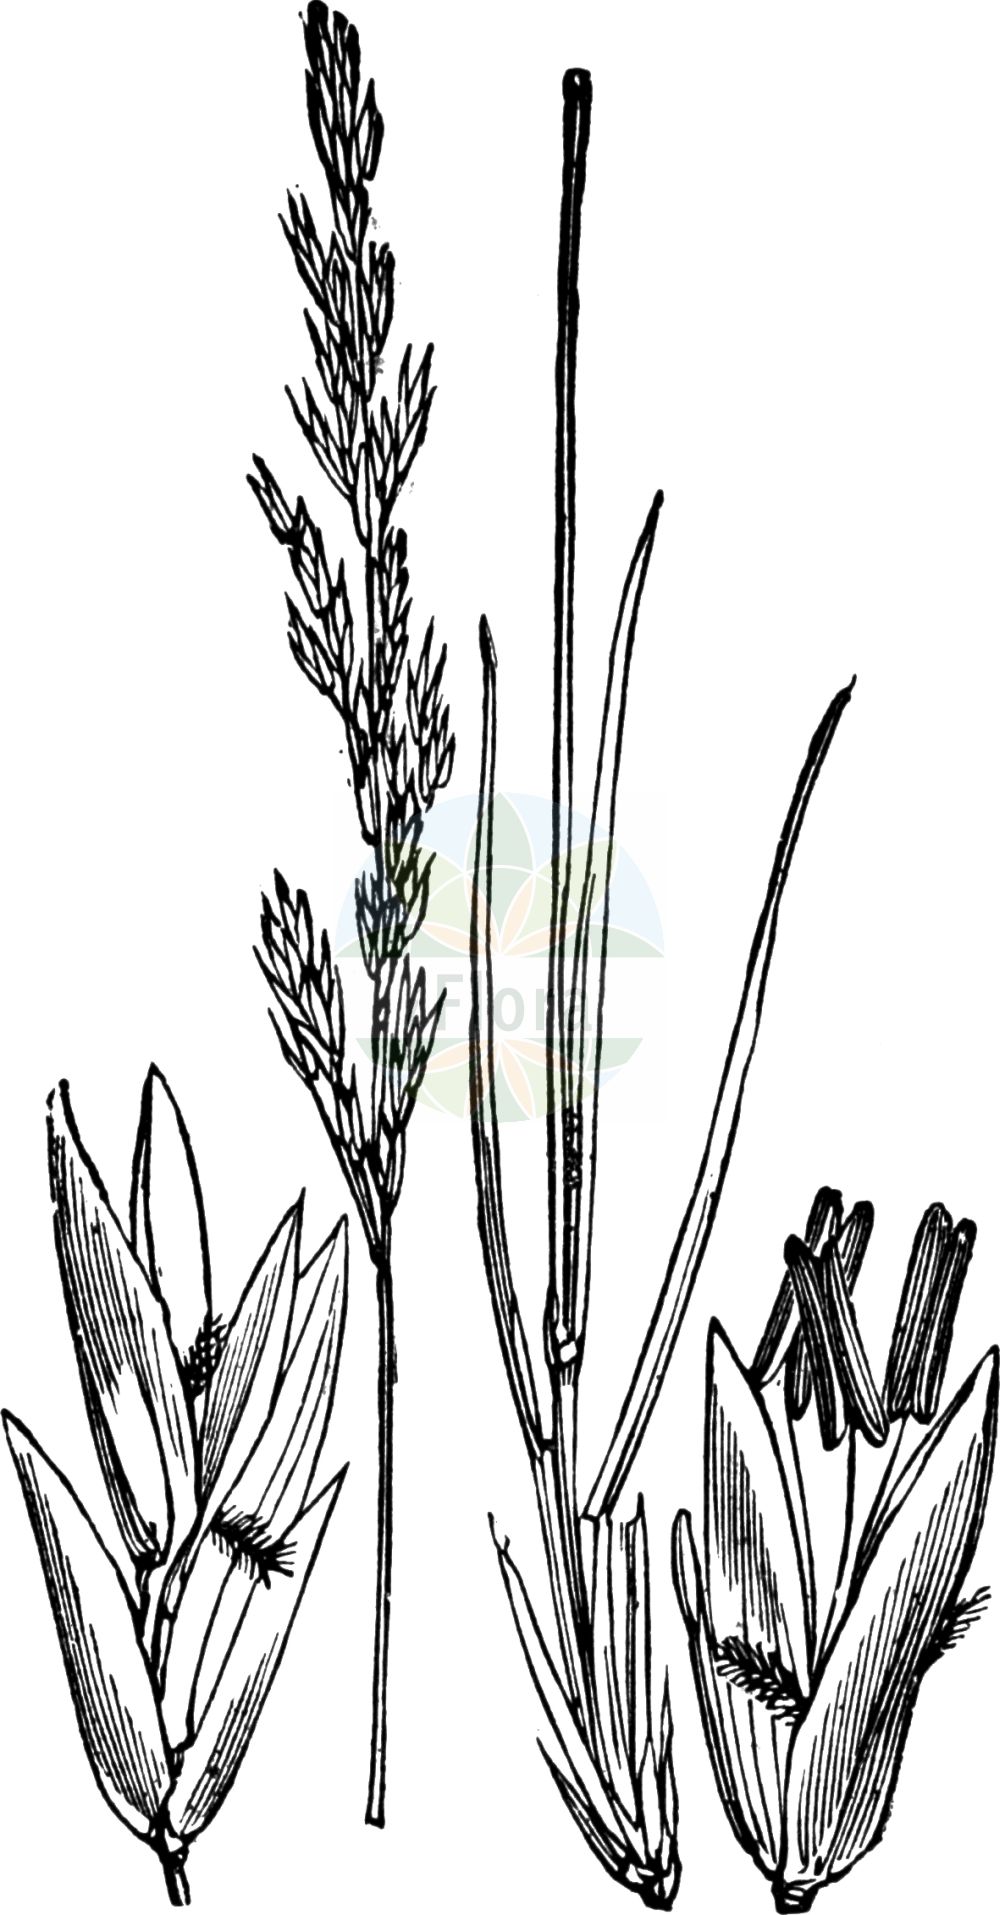 Historische Abbildung von Molinia caerulea (Gewöhnliches Pfeifengras - Purple Moor-grass). Das Bild zeigt Blatt, Bluete, Frucht und Same. ---- Historical Drawing of Molinia caerulea (Gewöhnliches Pfeifengras - Purple Moor-grass). The image is showing leaf, flower, fruit and seed.(Molinia caerulea,Gewöhnliches Pfeifengras,Purple Moor-grass,Aira coerulea,Molinia caerulea,Molinia euxina,Molinia horanszkyi,Molinia hungarica,Molinia simonii,Gewoehnliches Pfeifengras,Bentgras,Benthalm,Besenried,Binsenhalm,Blaues Pfeifengras,Purple Moor-grass,Flying Bentgrass,Moorgrass,Purple Heathgrass,Purple Molinia,Molinia,Pfeifengras,Moorgrass,Poaceae,Süßgräser,Grass family,Blatt,Bluete,Frucht,Same,leaf,flower,fruit,seed,Fitch et al. (1880))